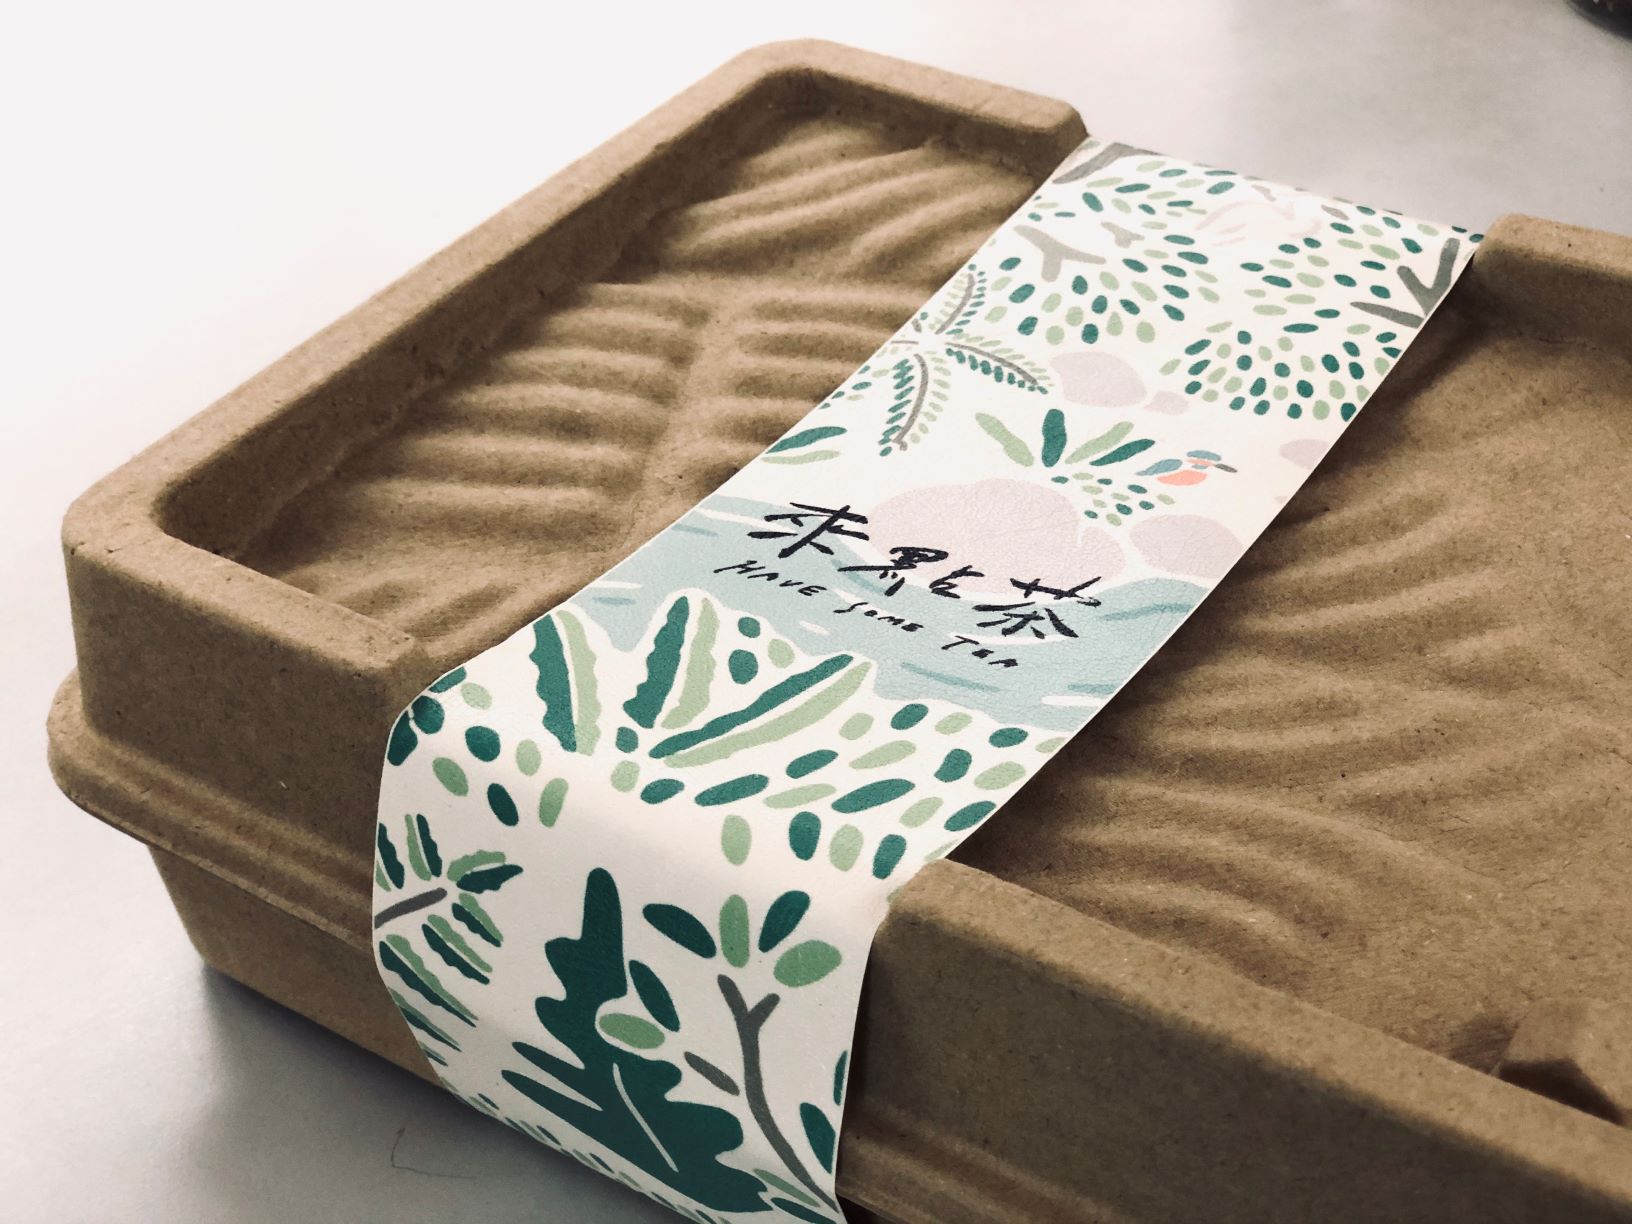 以坪林梯田為概念設計的來點茶禮盒包裝